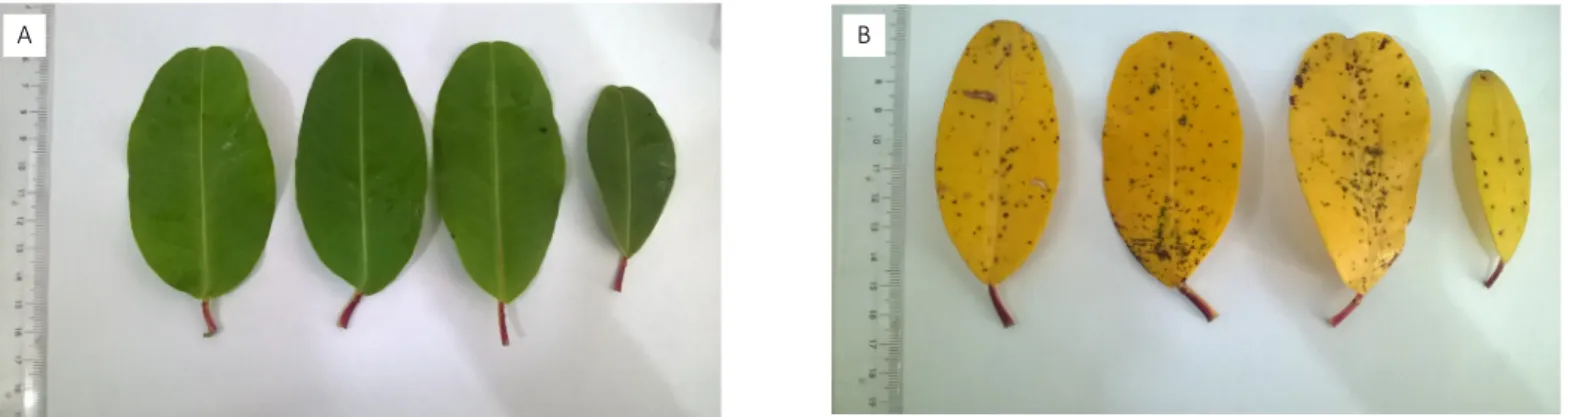 Figura 2 – Folhas de Laguncularia racemosa: (A) verdes e (B) amarelas (com clorose).